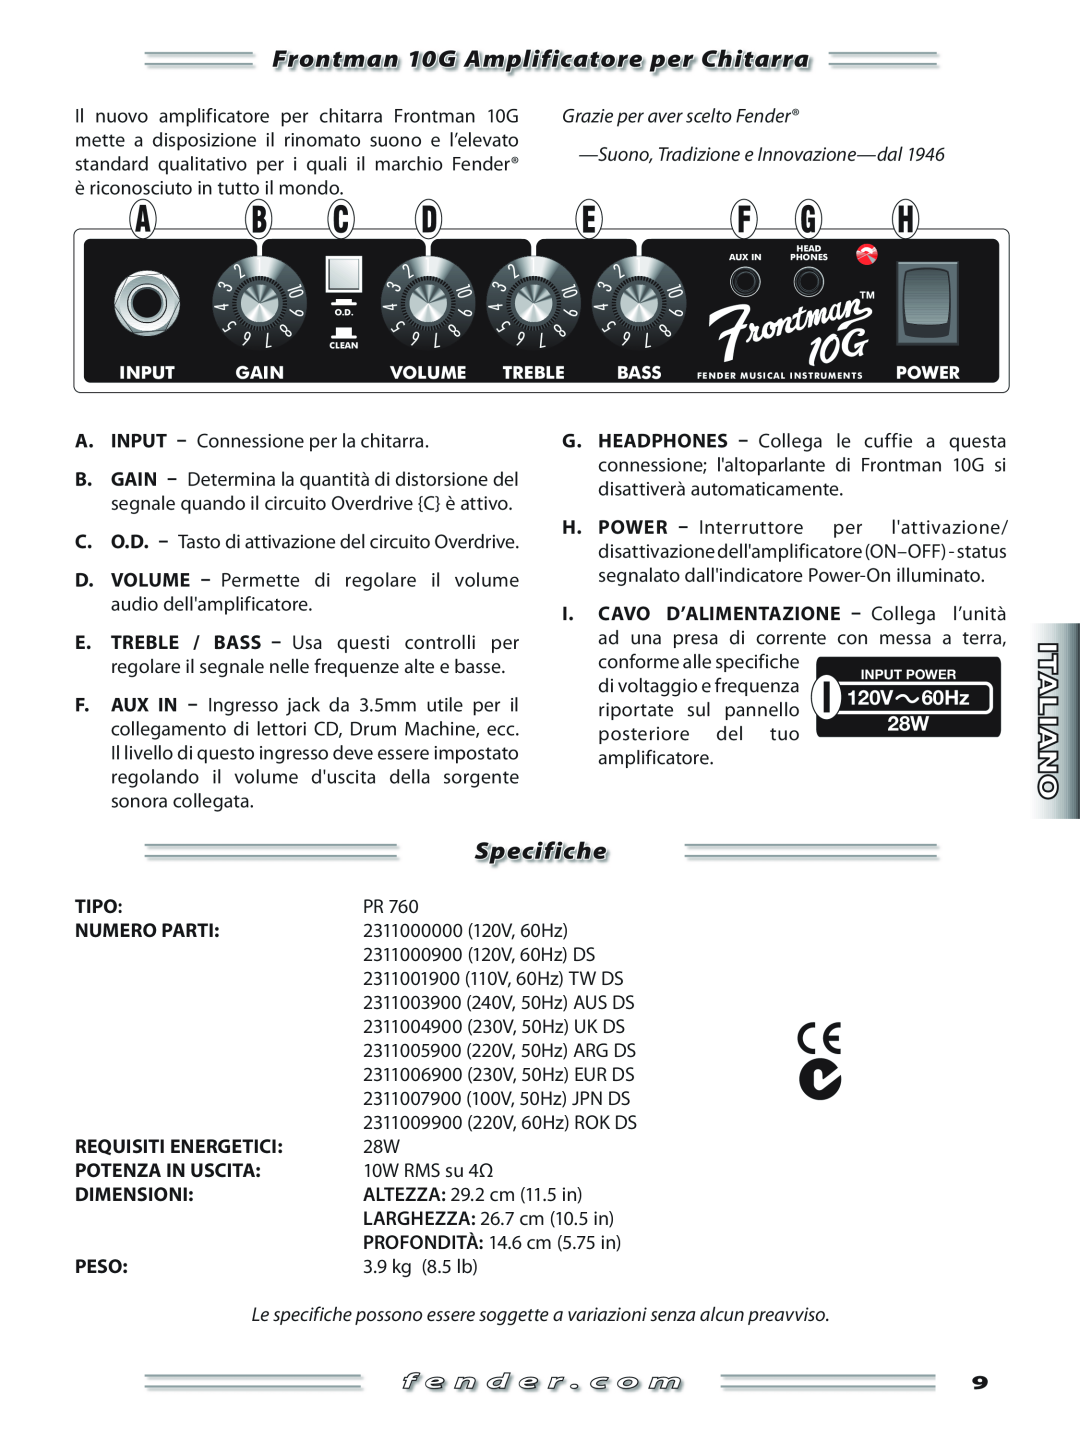 Fender manual Frontman 10G Amplificatore per Chitarra, Specifiche, Grazie per aver scelto Fender, f e n d e r . c o m 